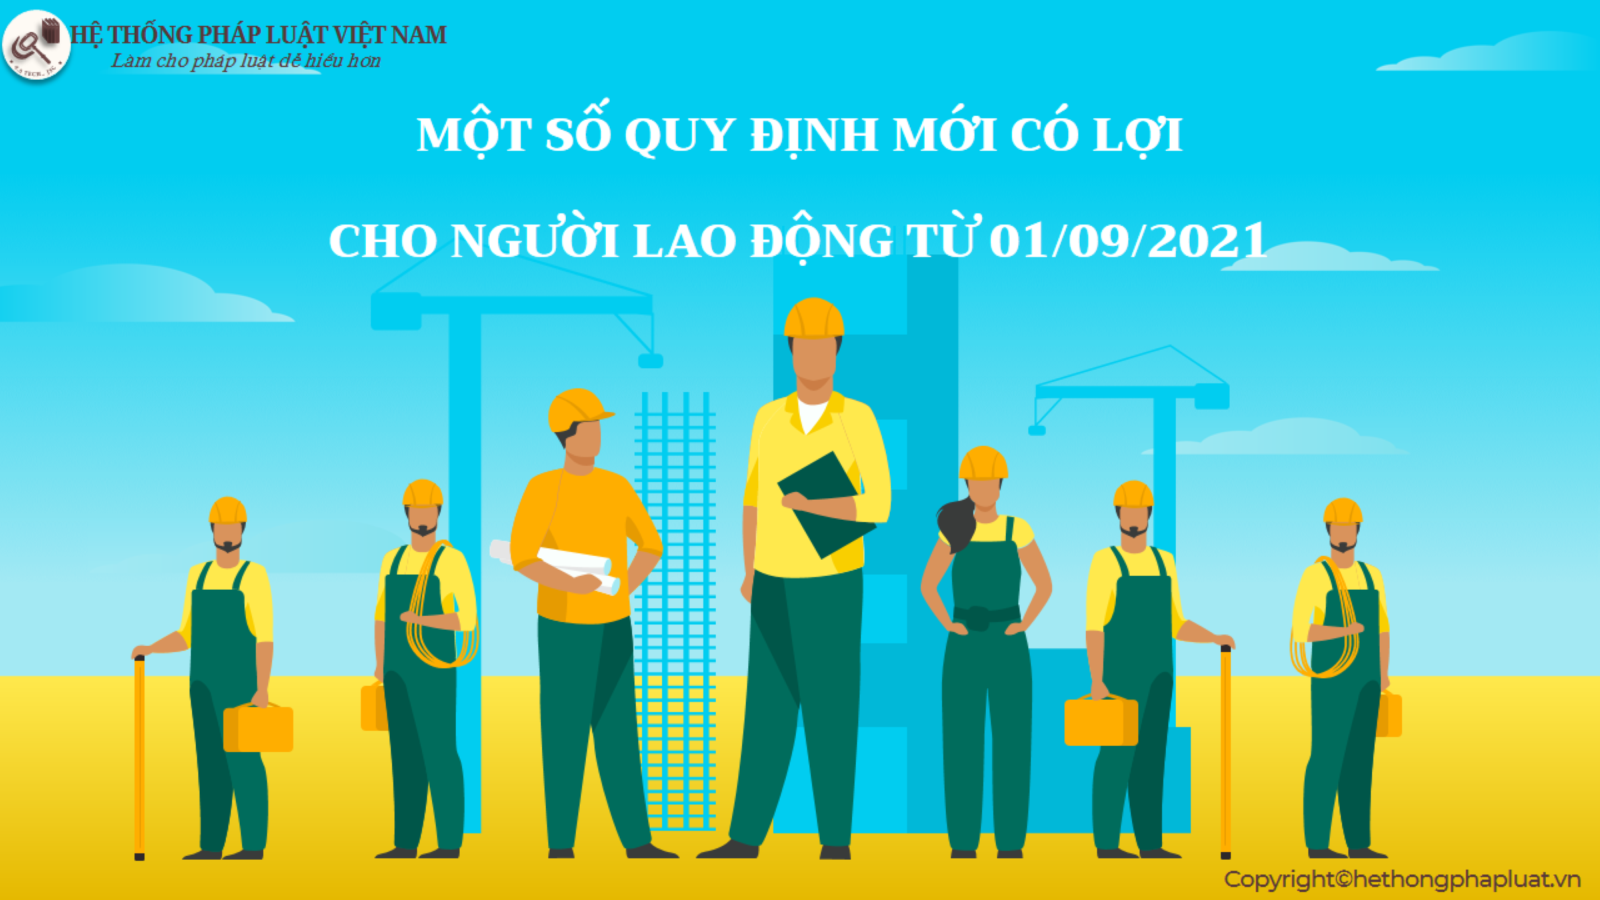 Một số quy định mới có lợi cho người lao động từ 01/09/2021